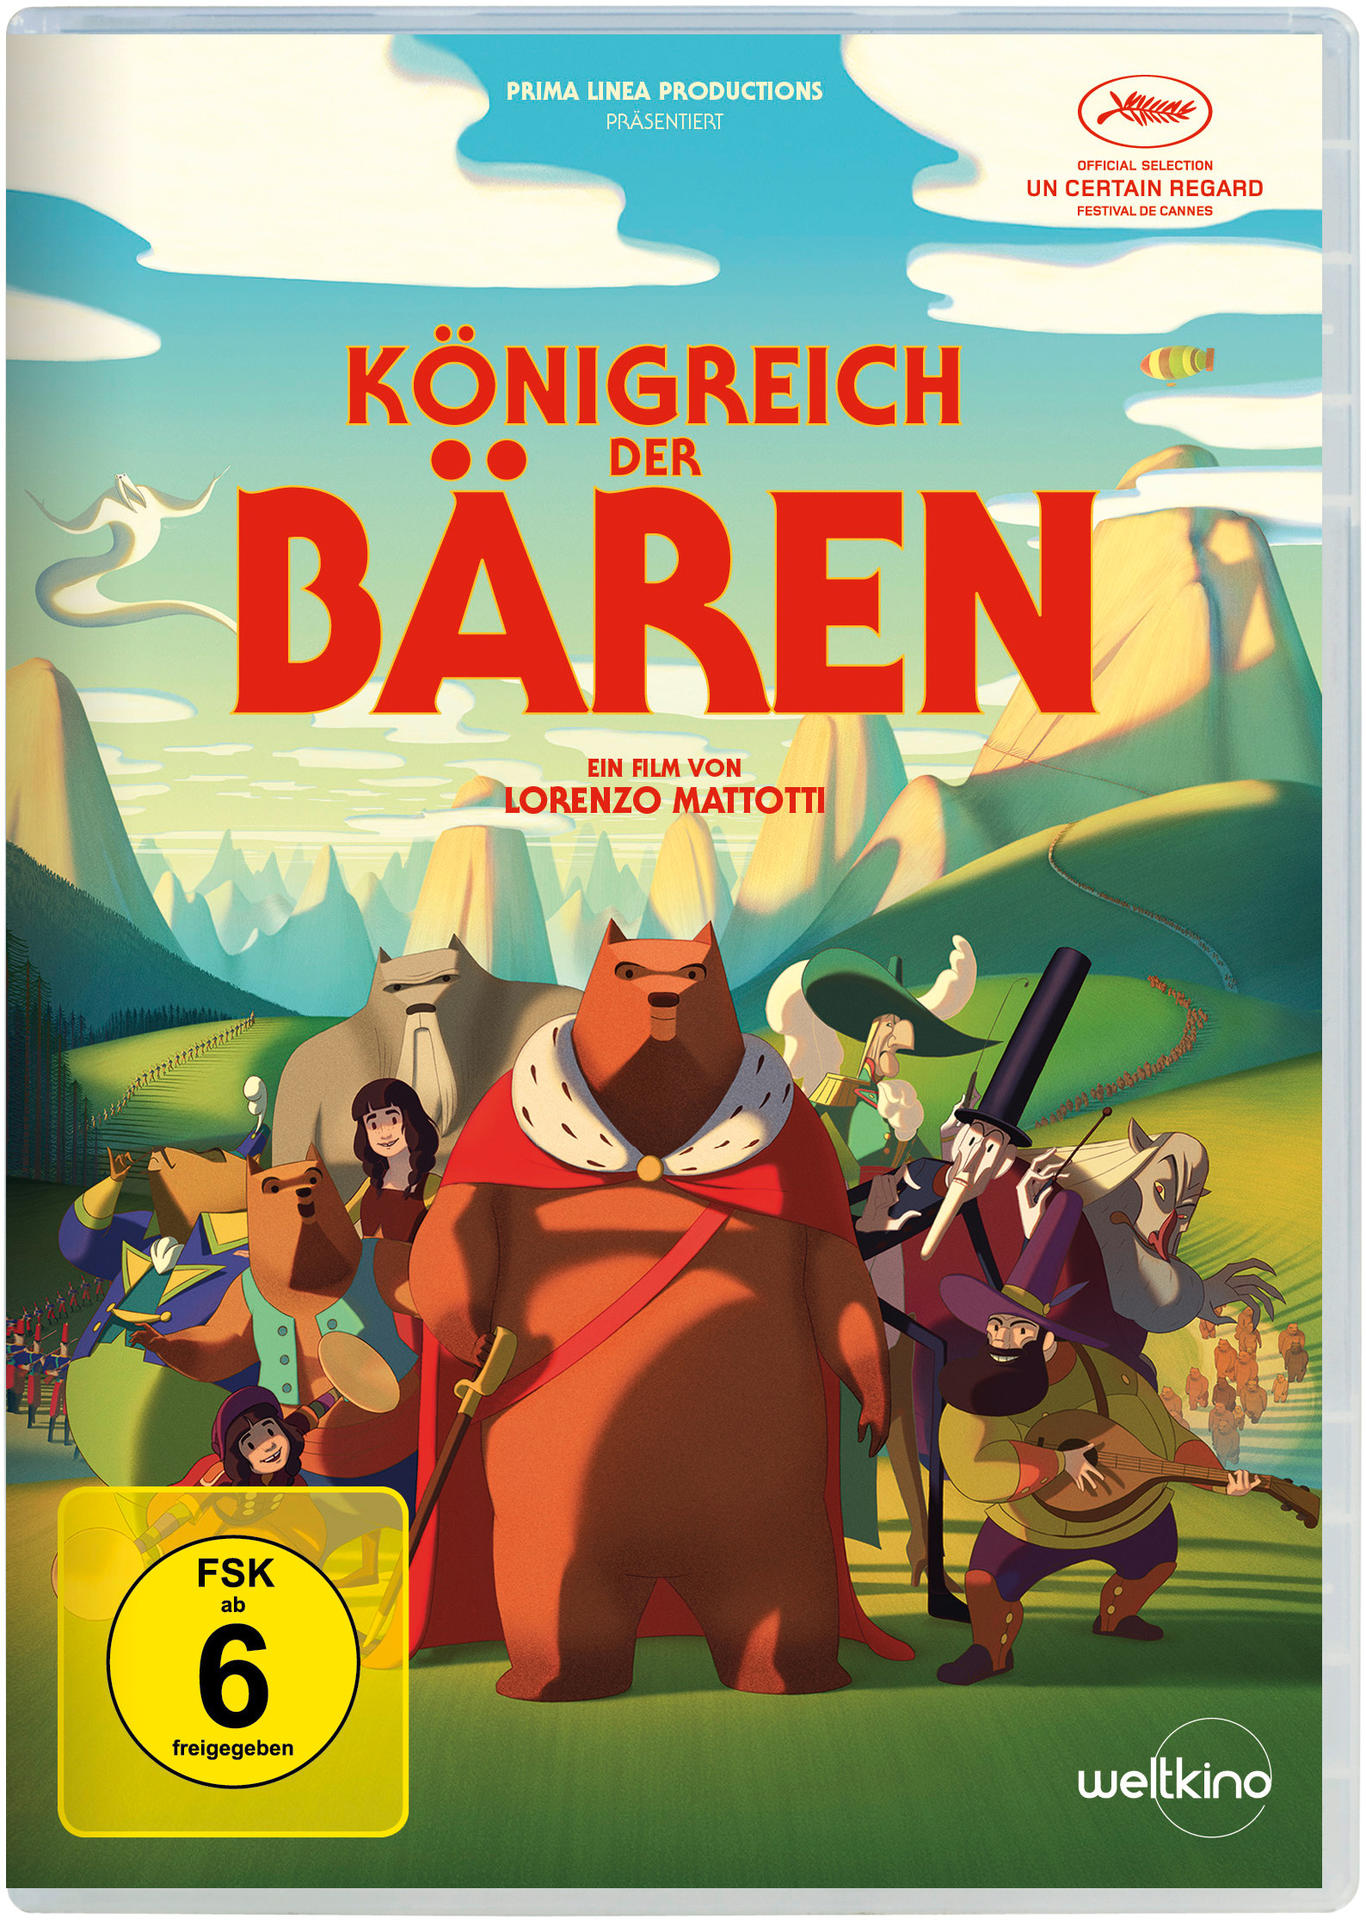 Bären der Königreich DVD